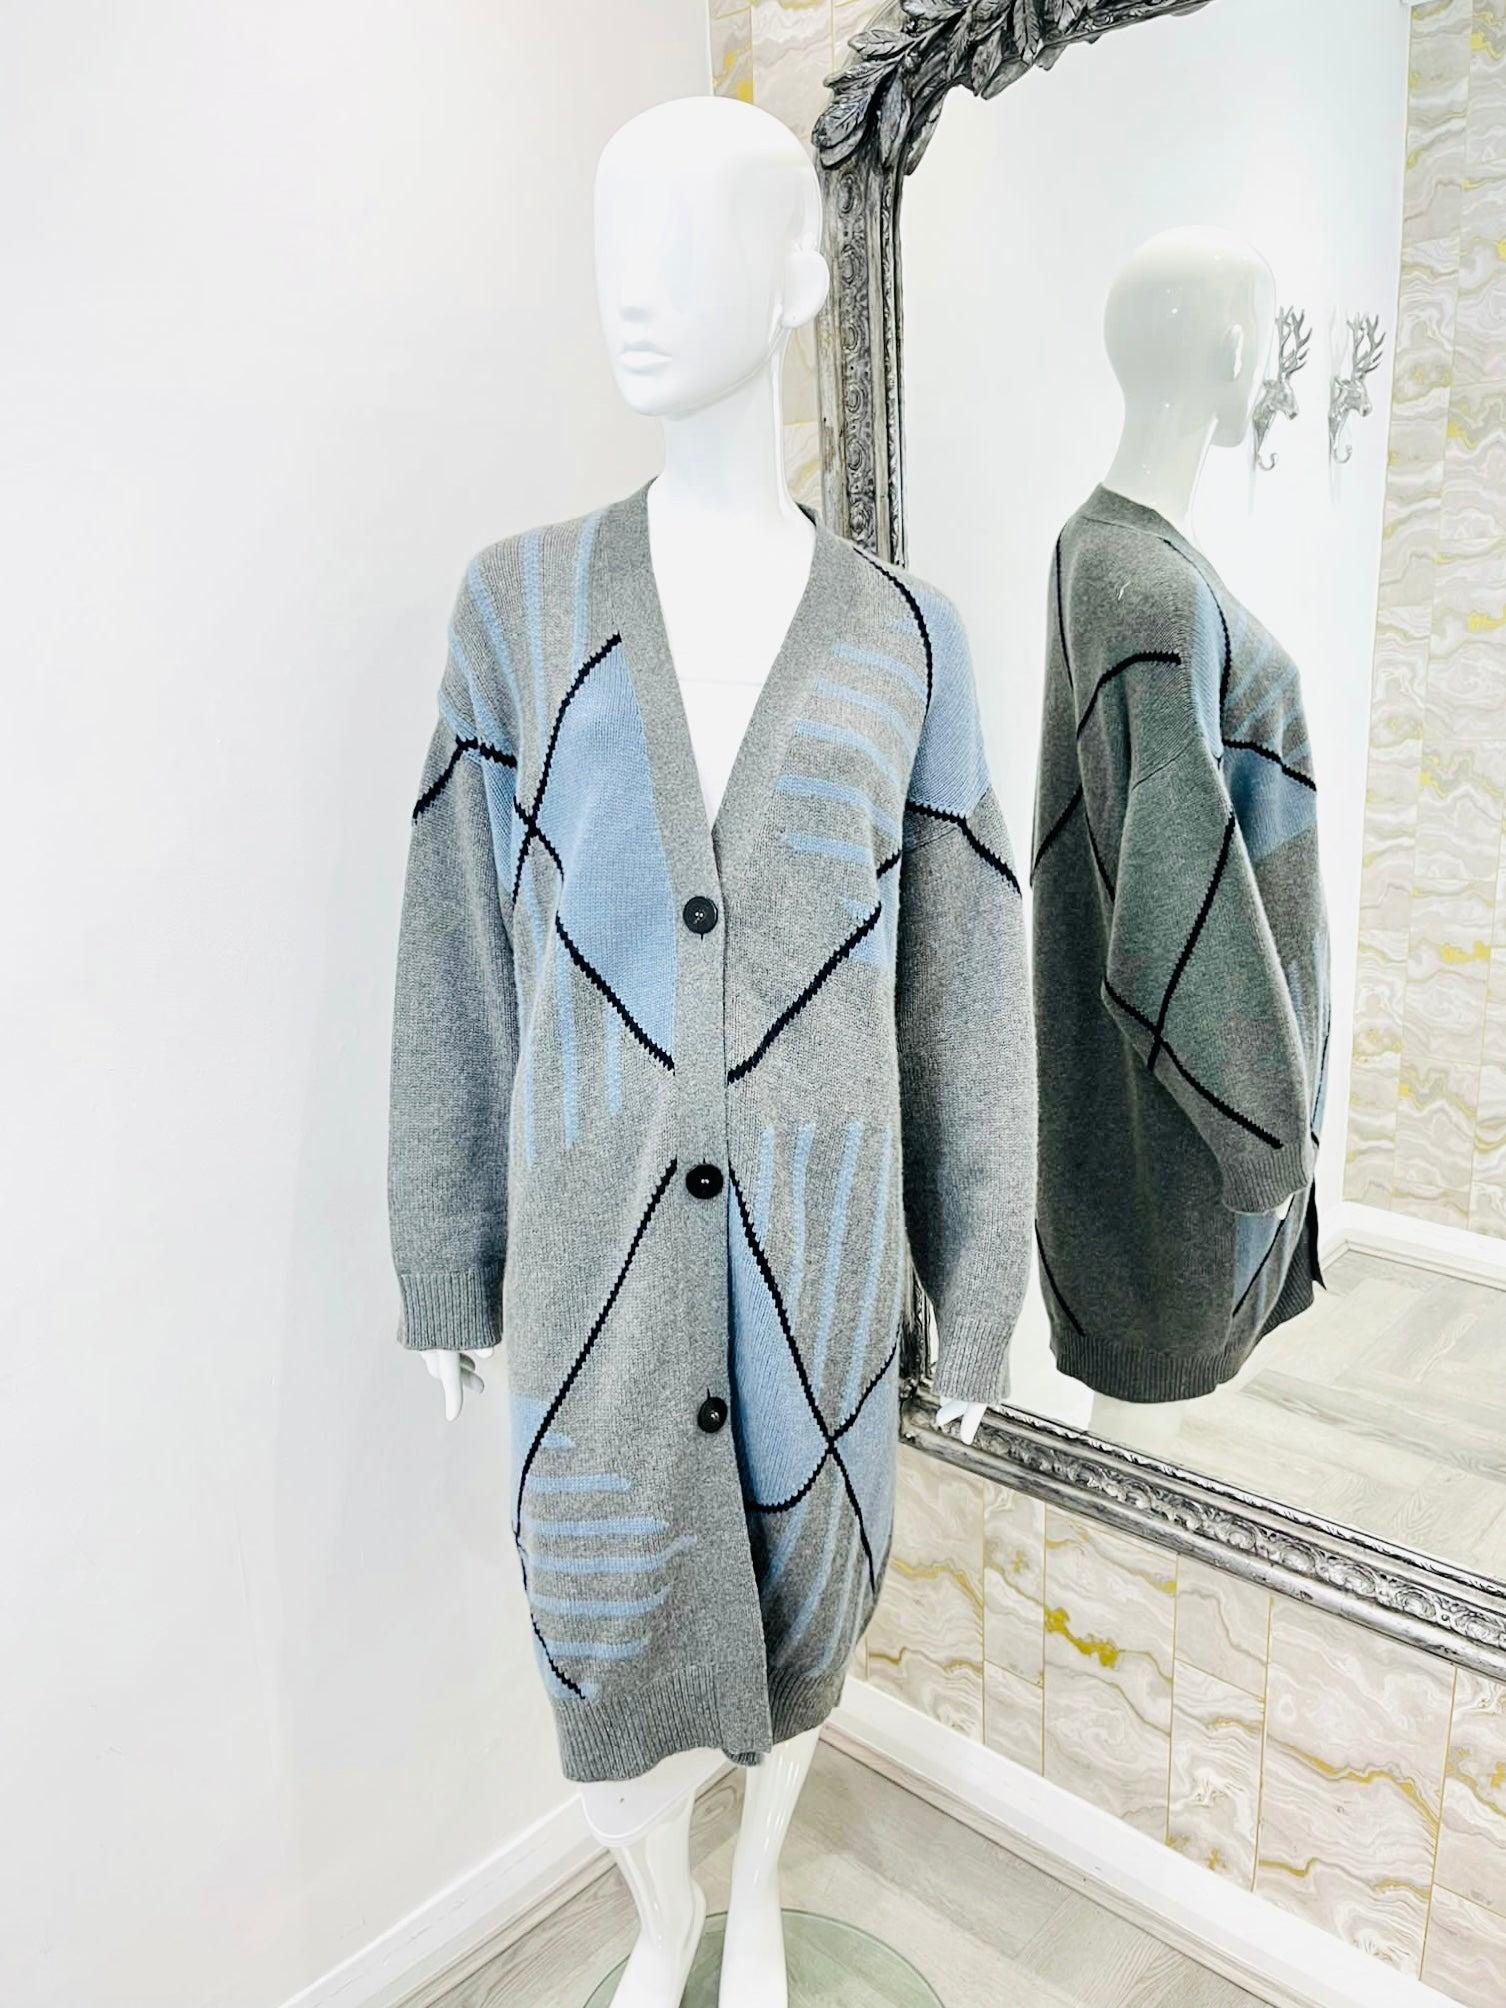 Neuf - Hermes Cashmere Cardi/Coat

Long cardigan gris à motifs abstraits bleus et noirs en forme d'argyle.

Boutons du logo.

Taille - 38FR

Condition - Brand New, With Labels

Composition - Cachemire